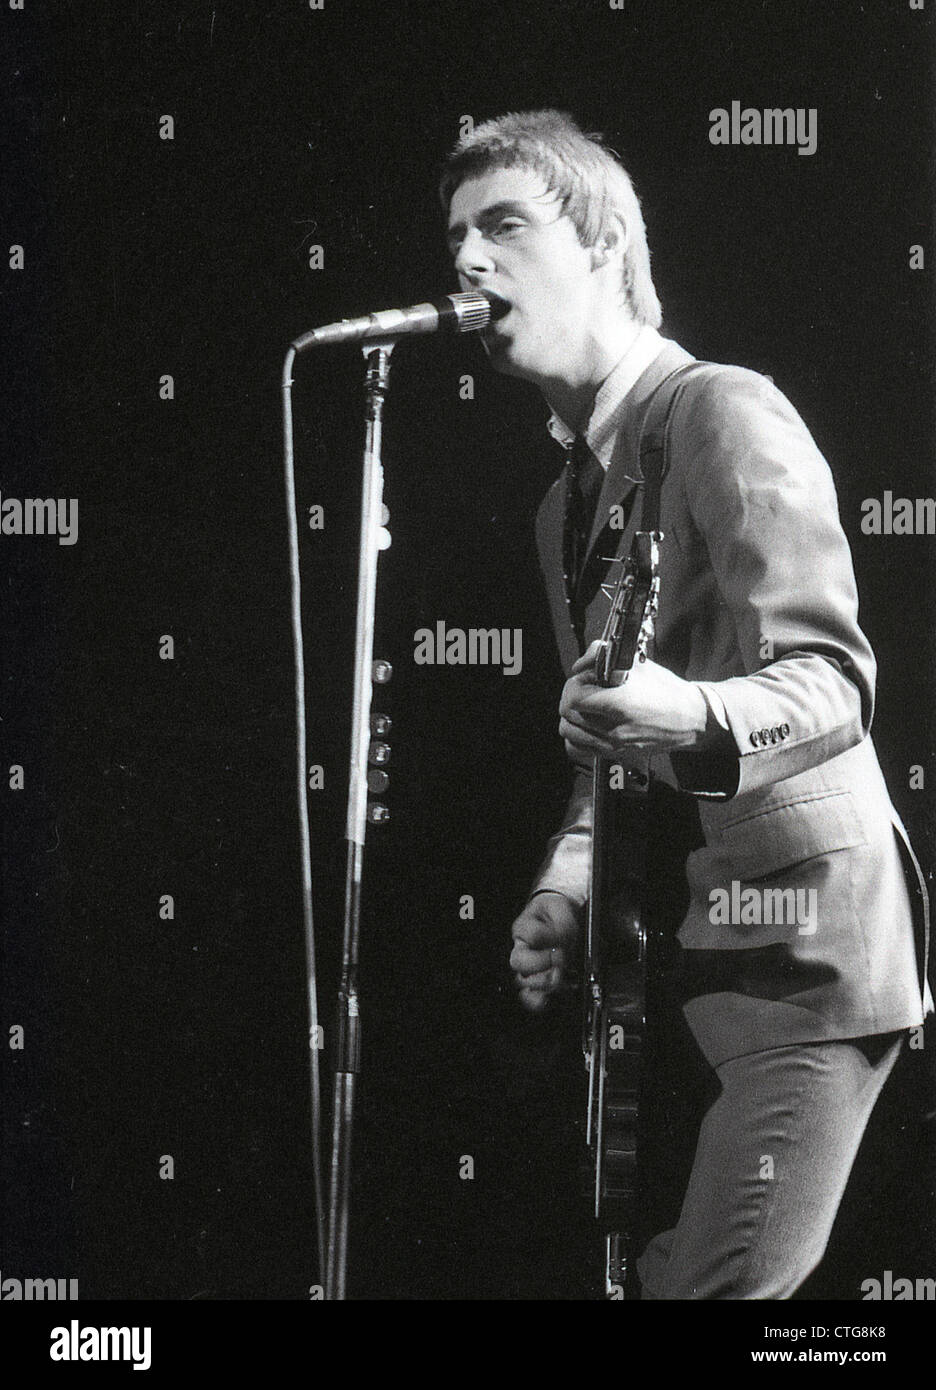 009965 - Paul Weller de The Jam en concert dans les années 1970 Banque D'Images